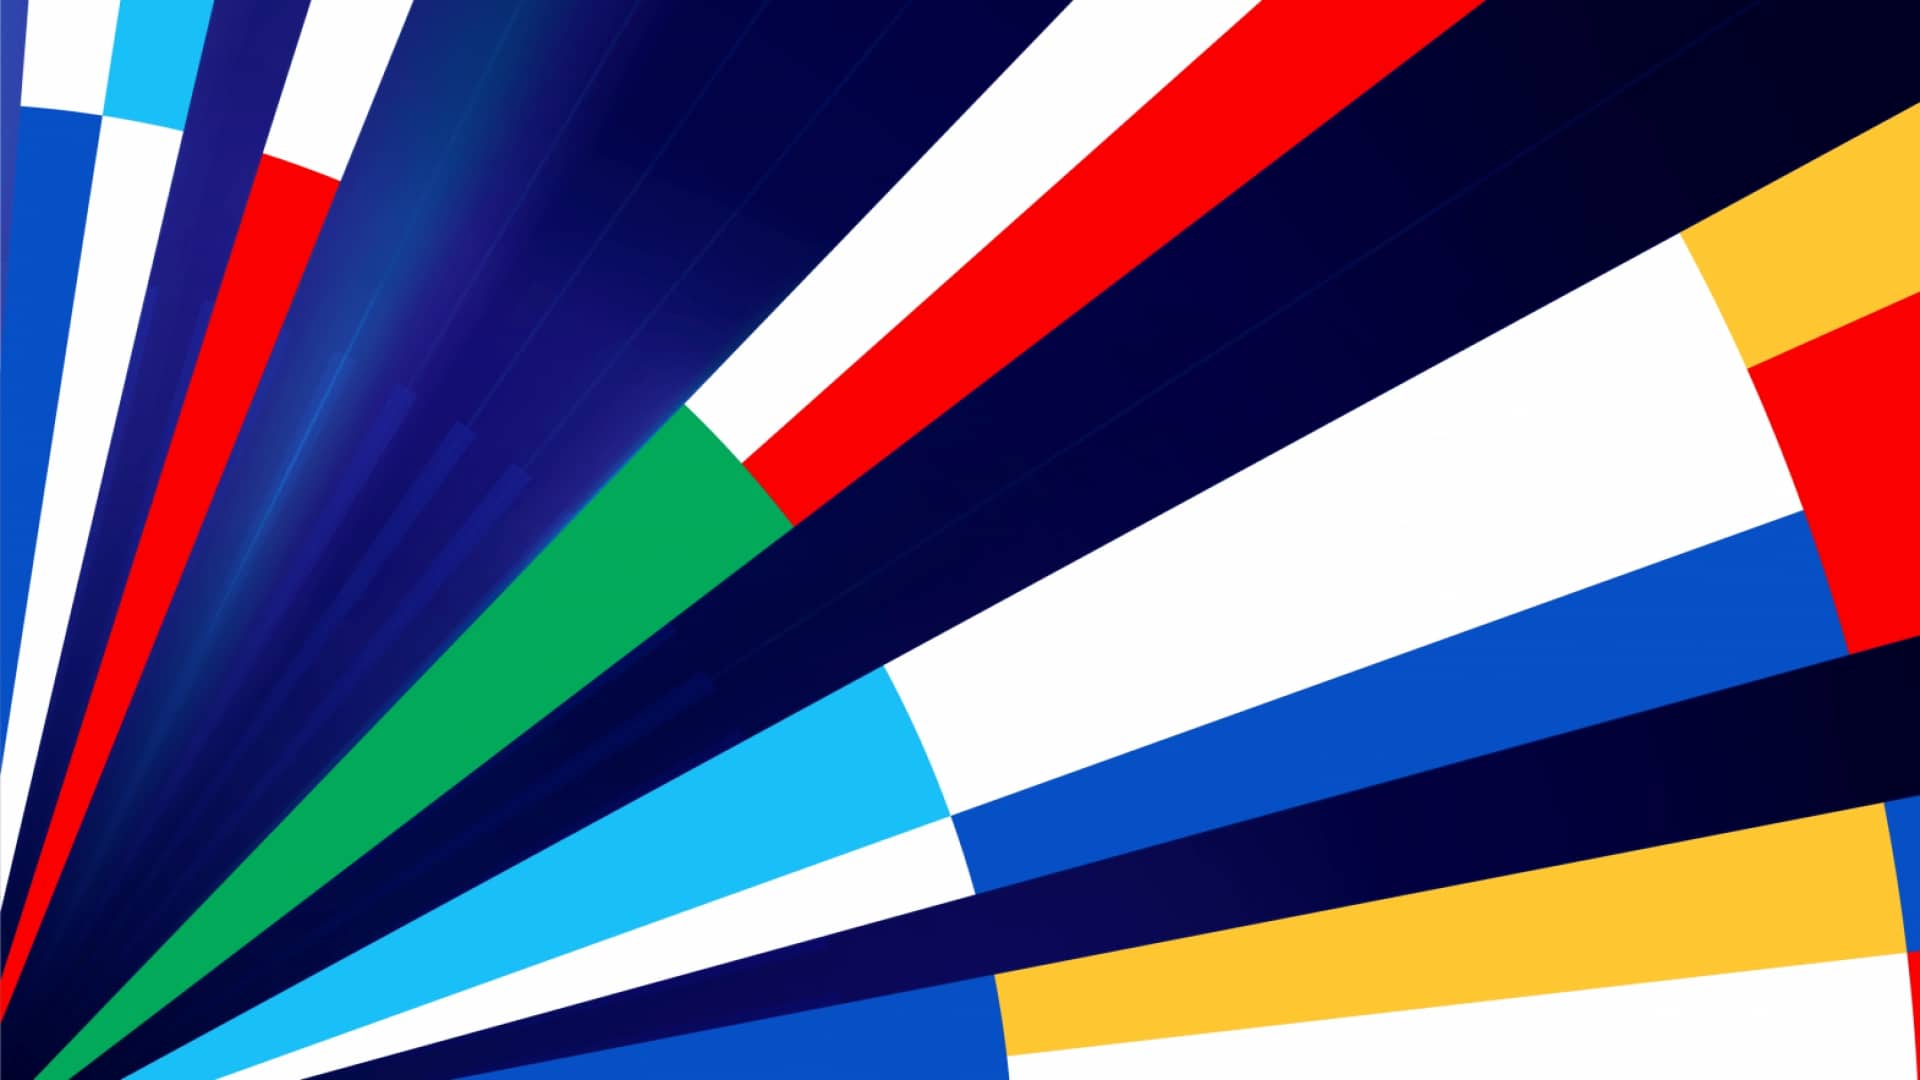 Március 13-án délután az Európai Műsorszolgáltatók Szövetsége (EBU) hivatalos közleményt adott ki a 2020-as Eurovíziós Dalfesztivál rendezésével kapcsolatosan.